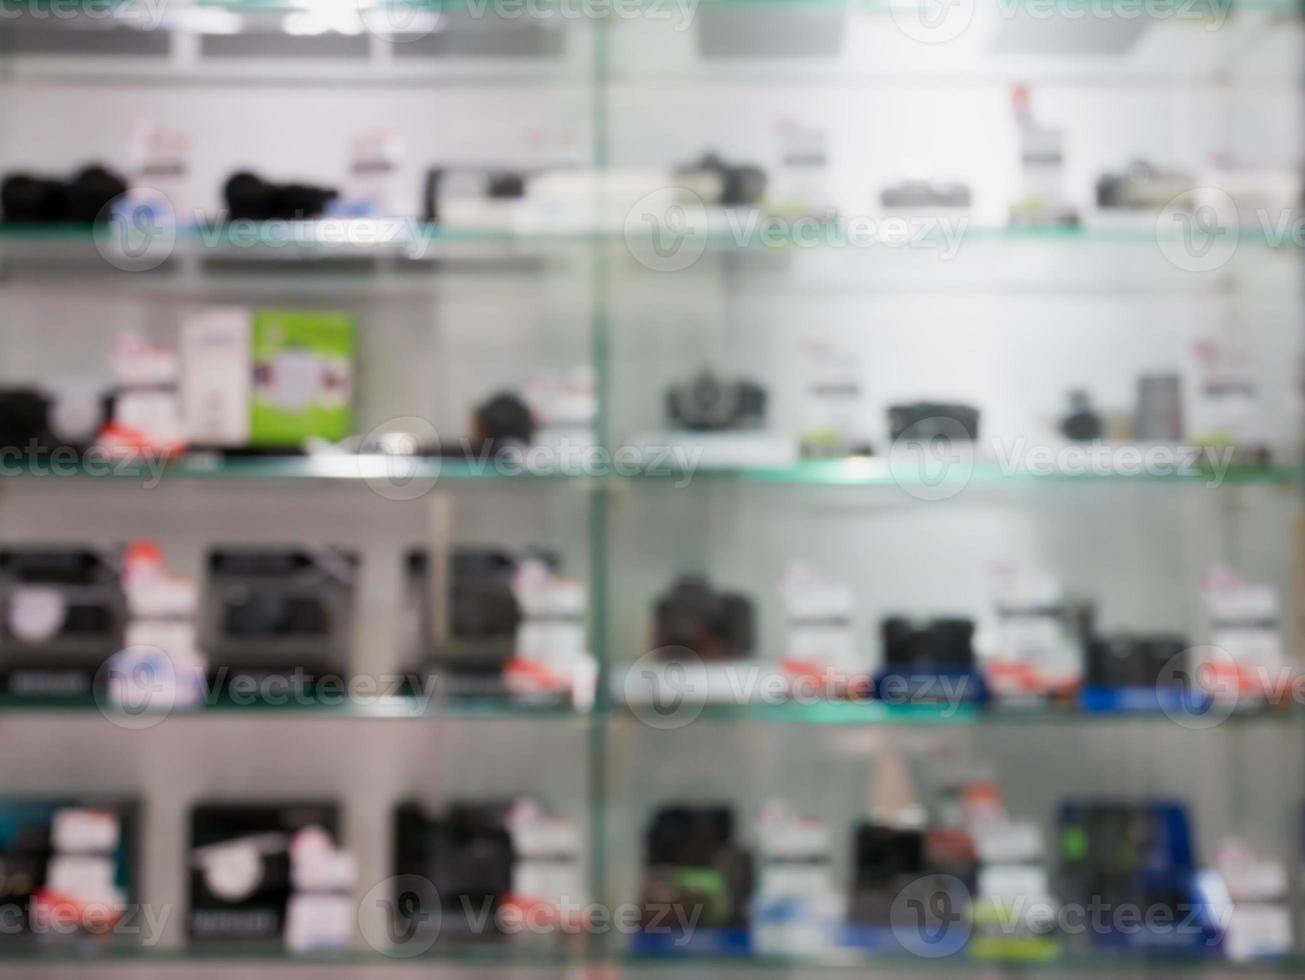 cámaras digitales y lentes en el estante de la tienda de cámaras desenfoque de fondo foto